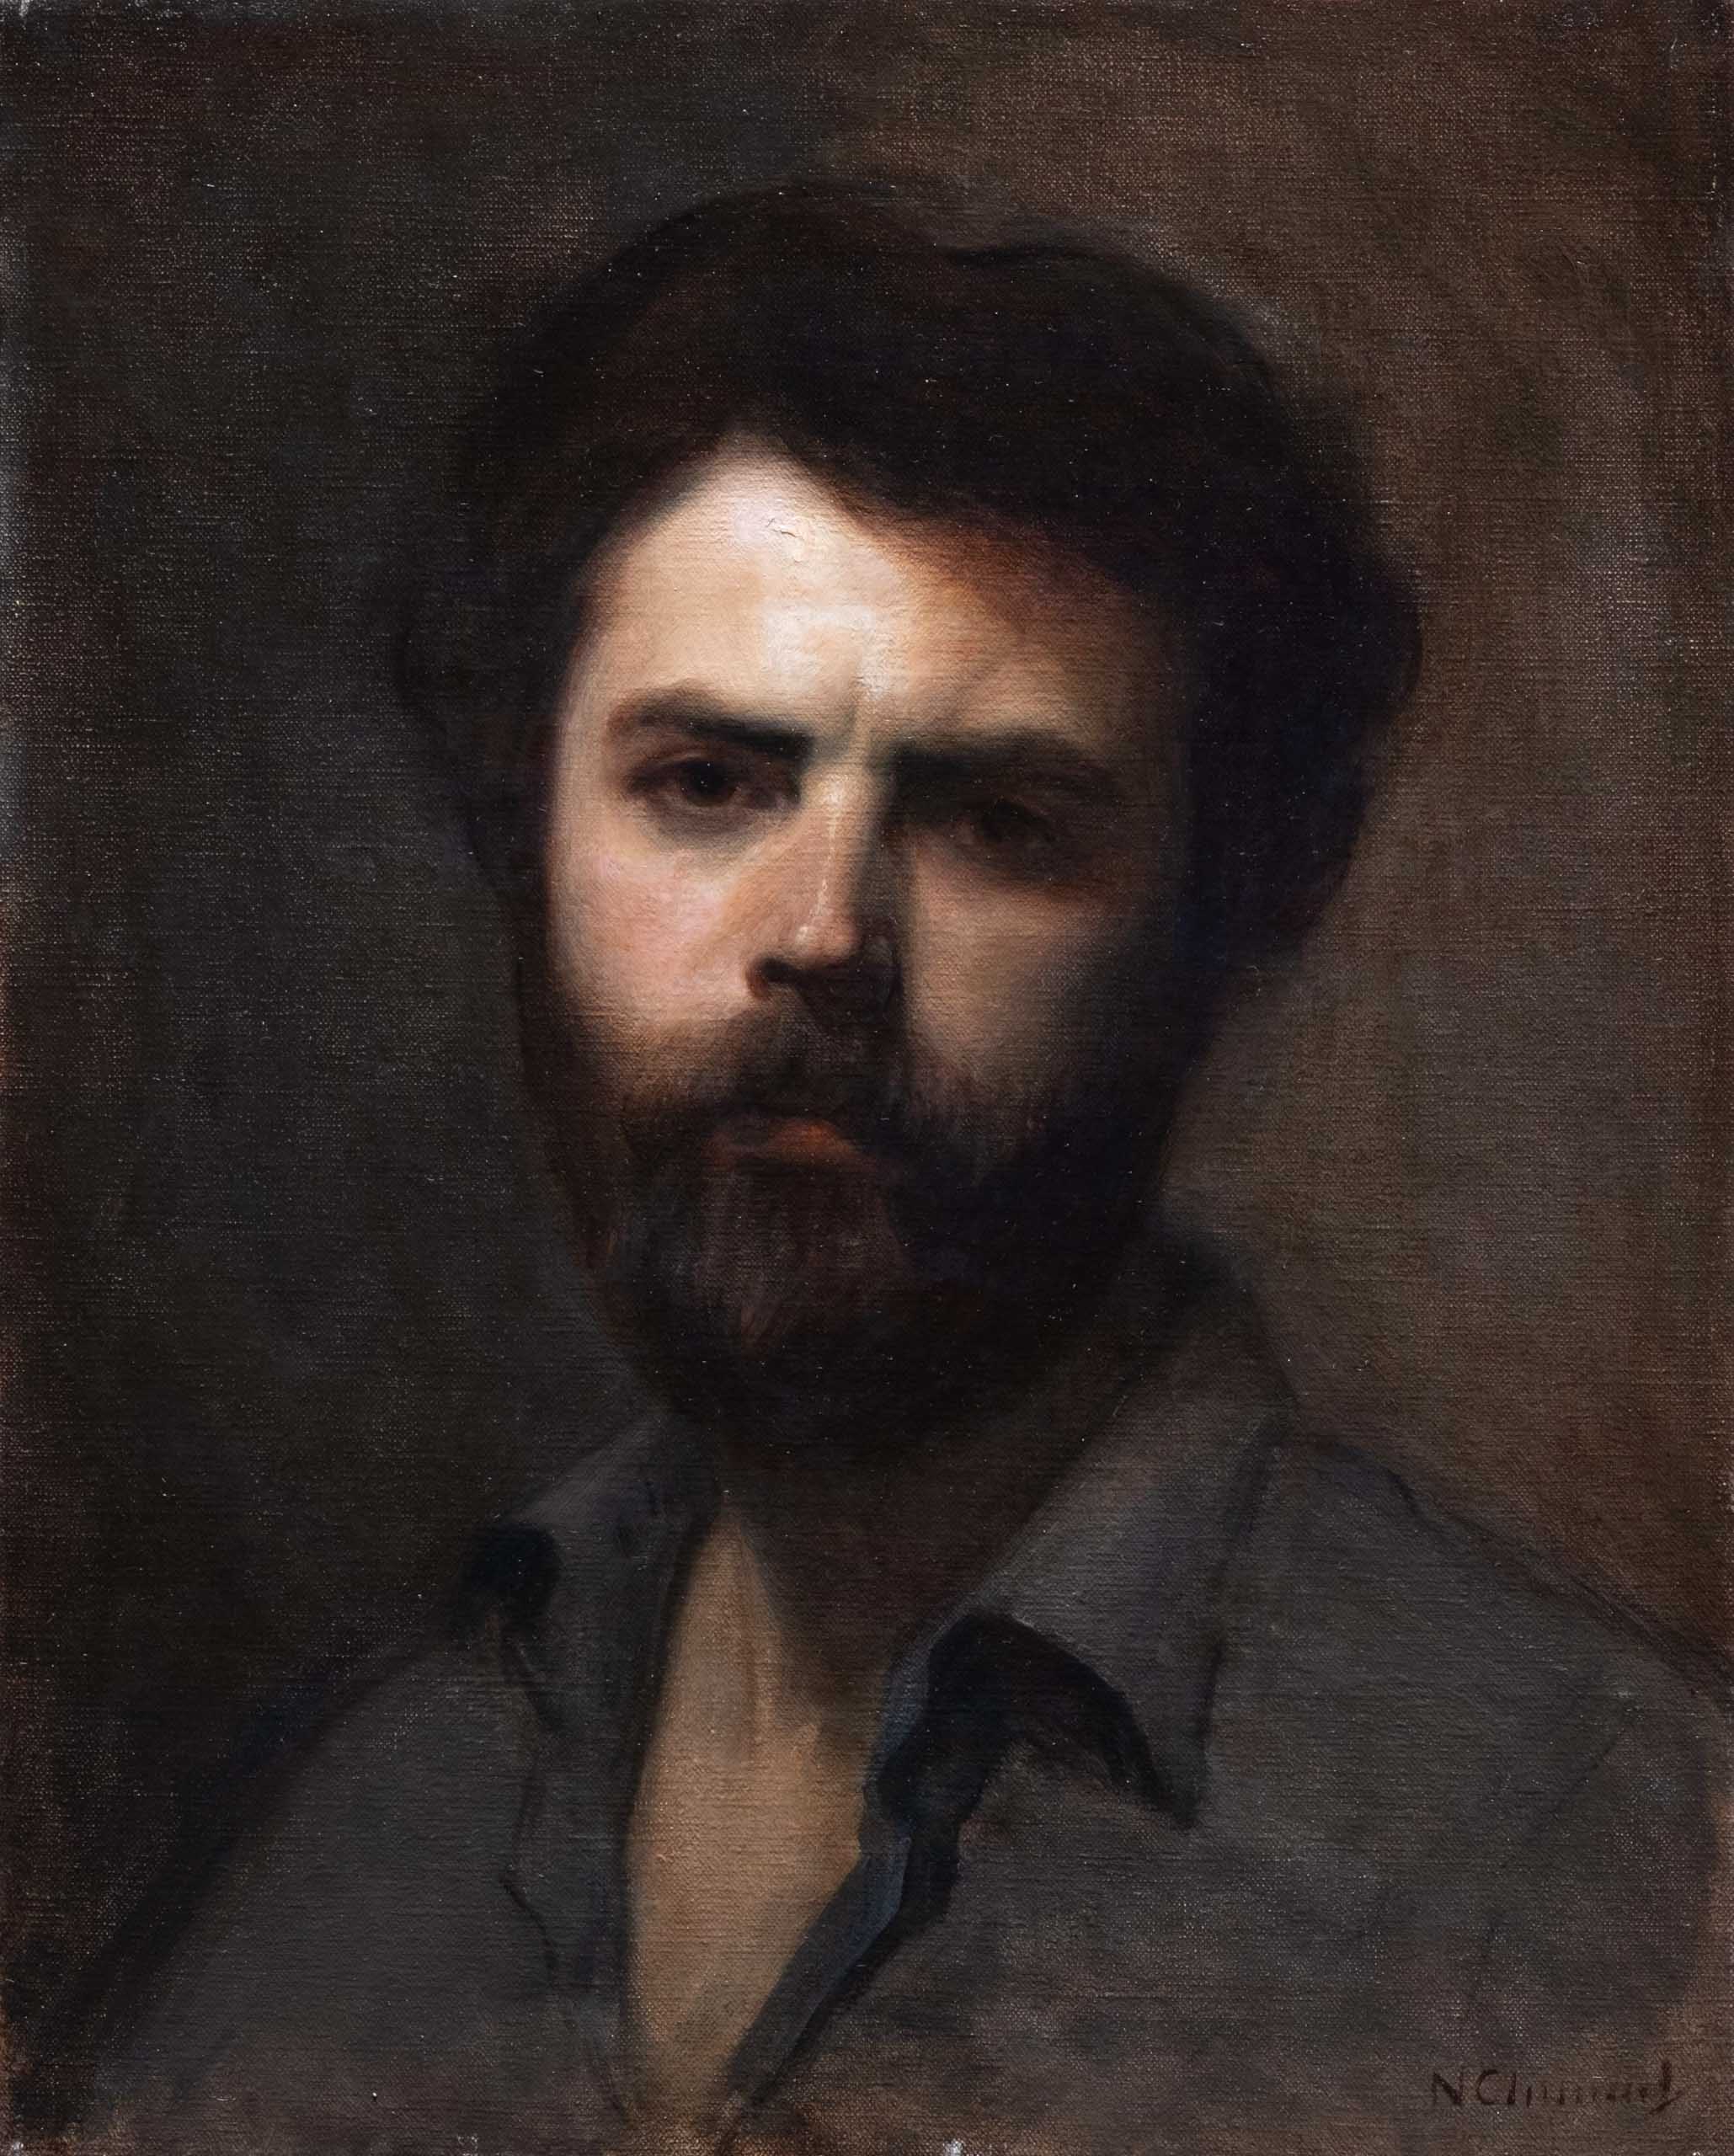 Nicholas Chaundy, Self Portrait, Oil on linen, 40 x 50 cm, 2019